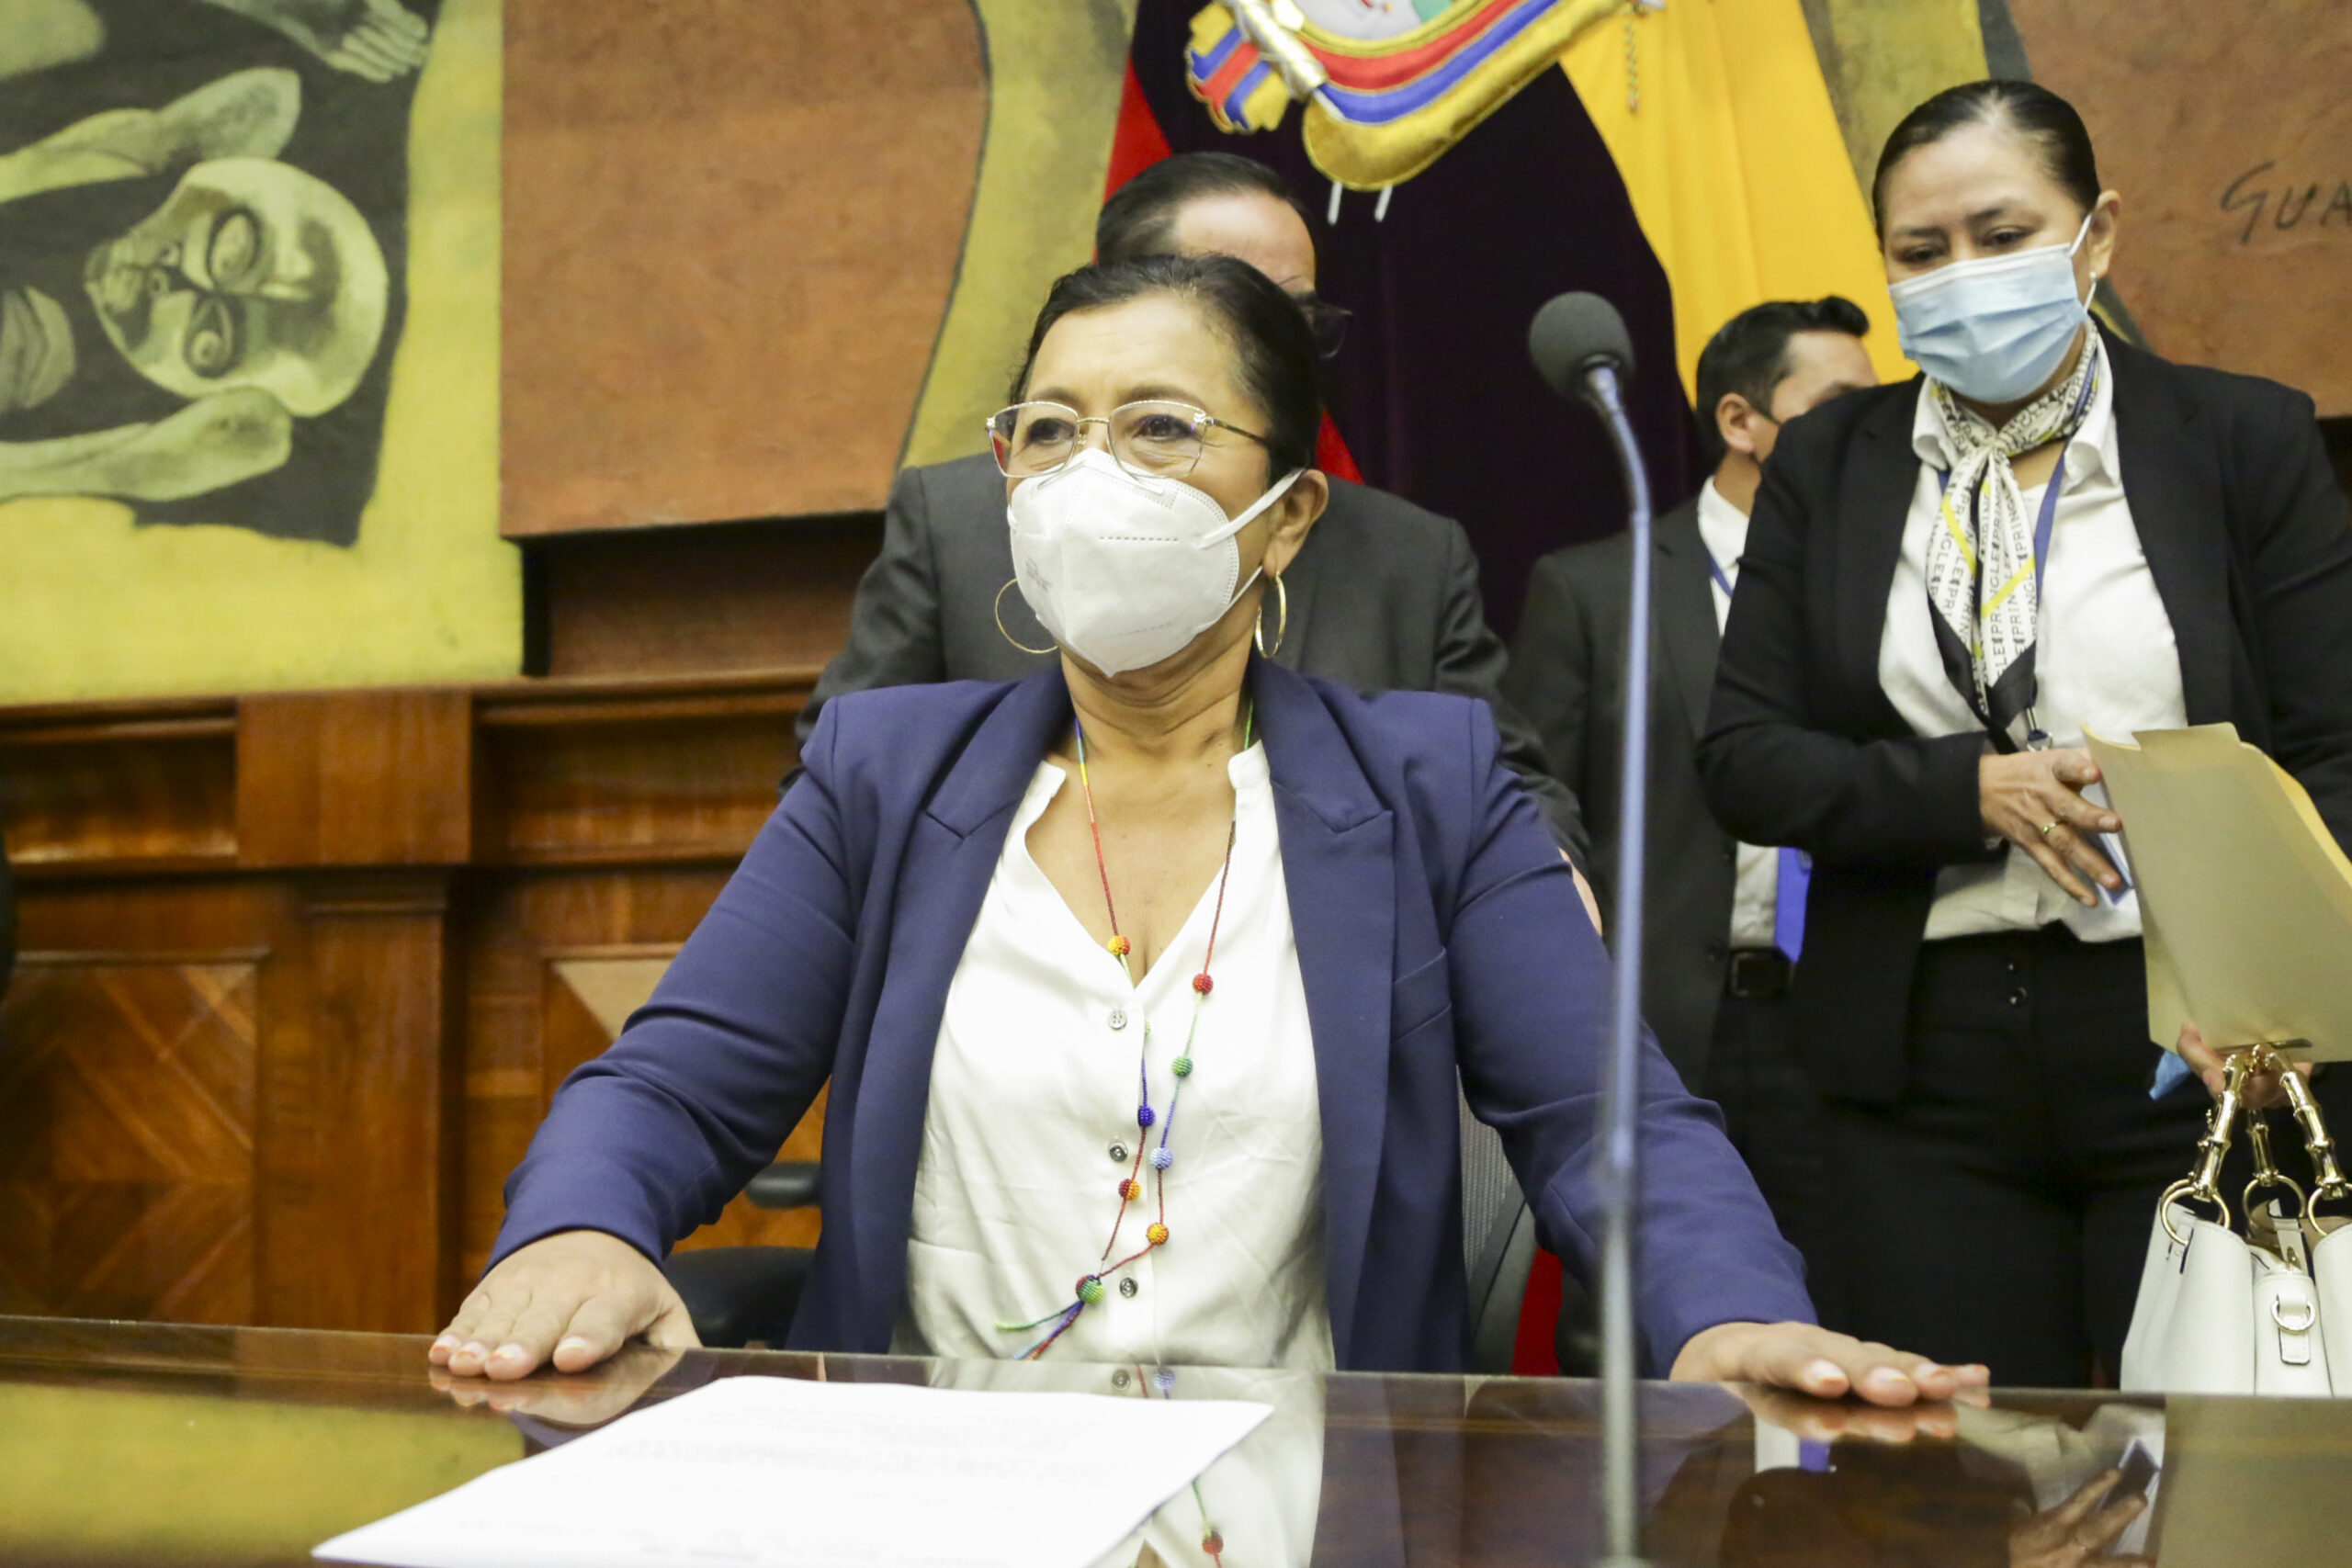 La presidenta de la Asamblea, Guadalupe Llori, dispuso que se vote por cambiar la orden del día para tratar una posible resolución del Pleno respecto a los Papeles de Pandora. Foto: Twitter Asamblea Nacional